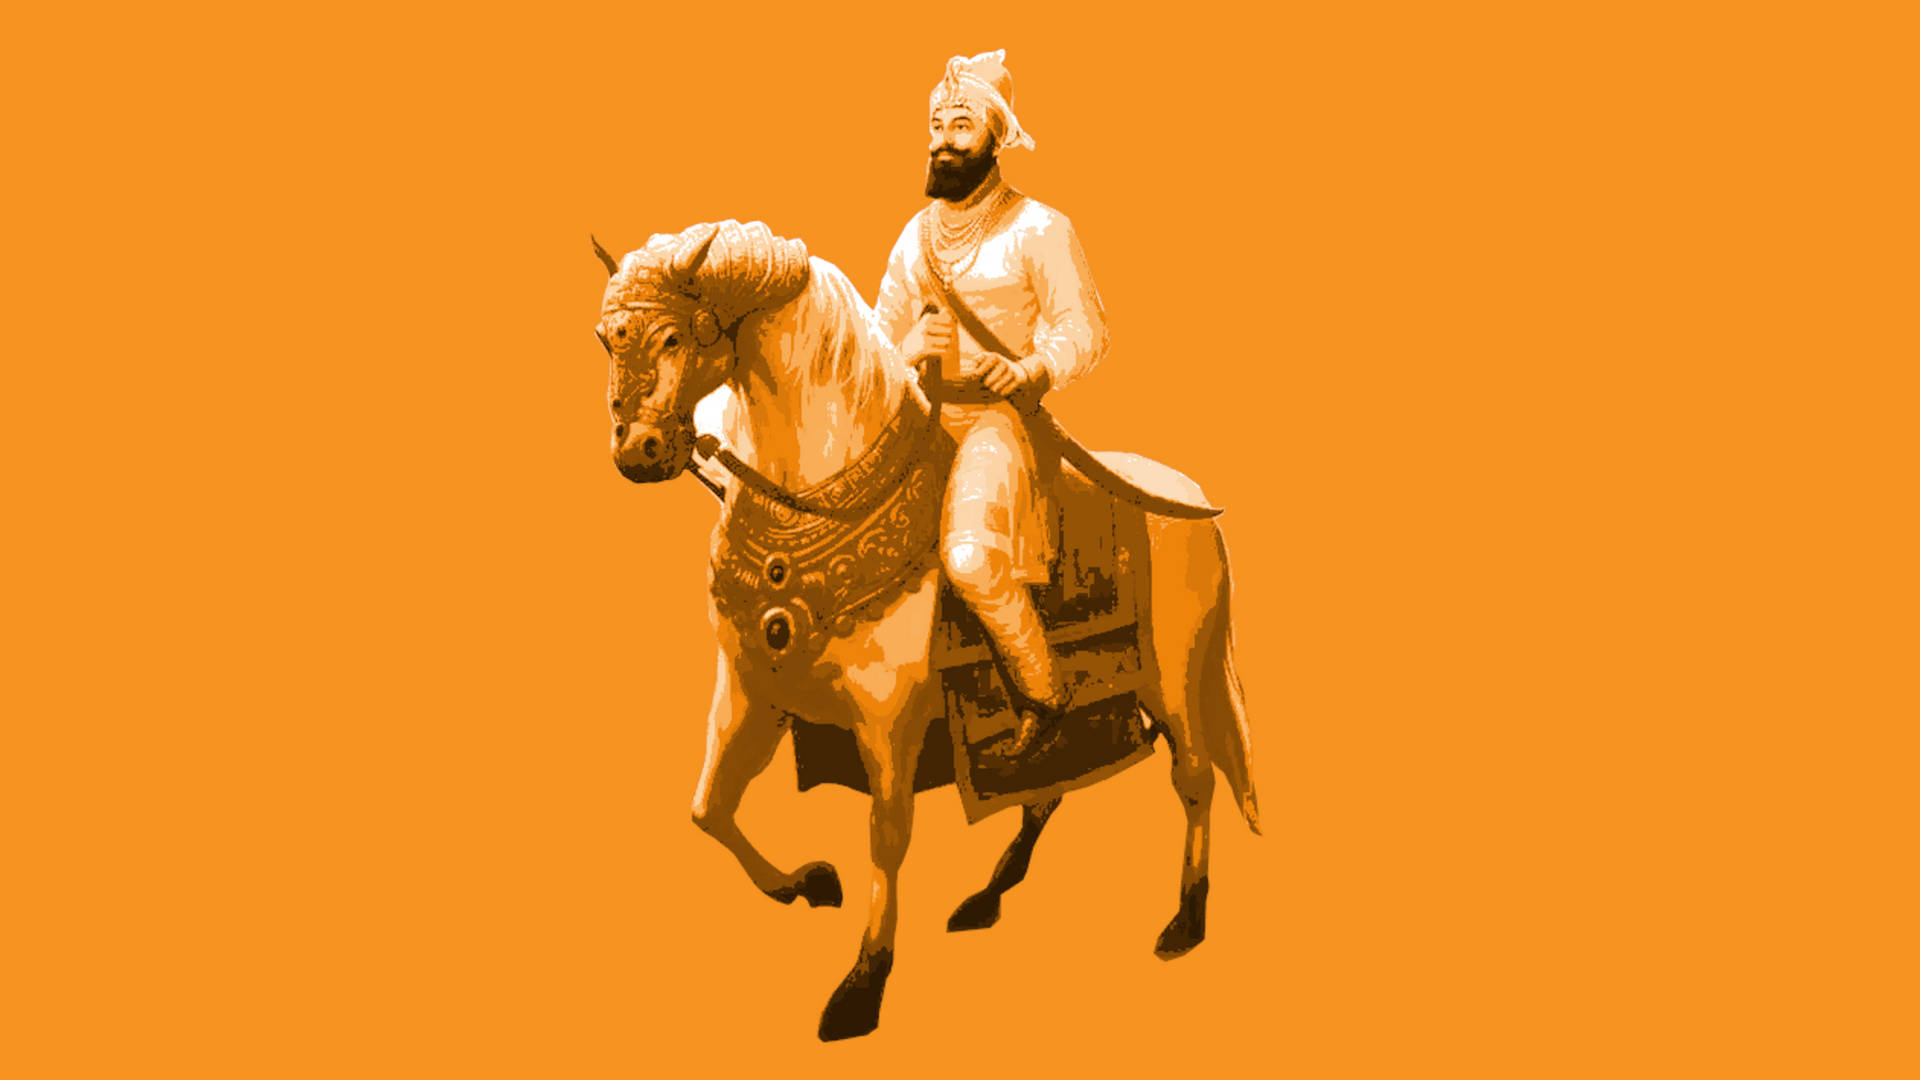 Fondode Pantalla De Guru Gobind Singh Ji En Color Naranja. Fondo de pantalla